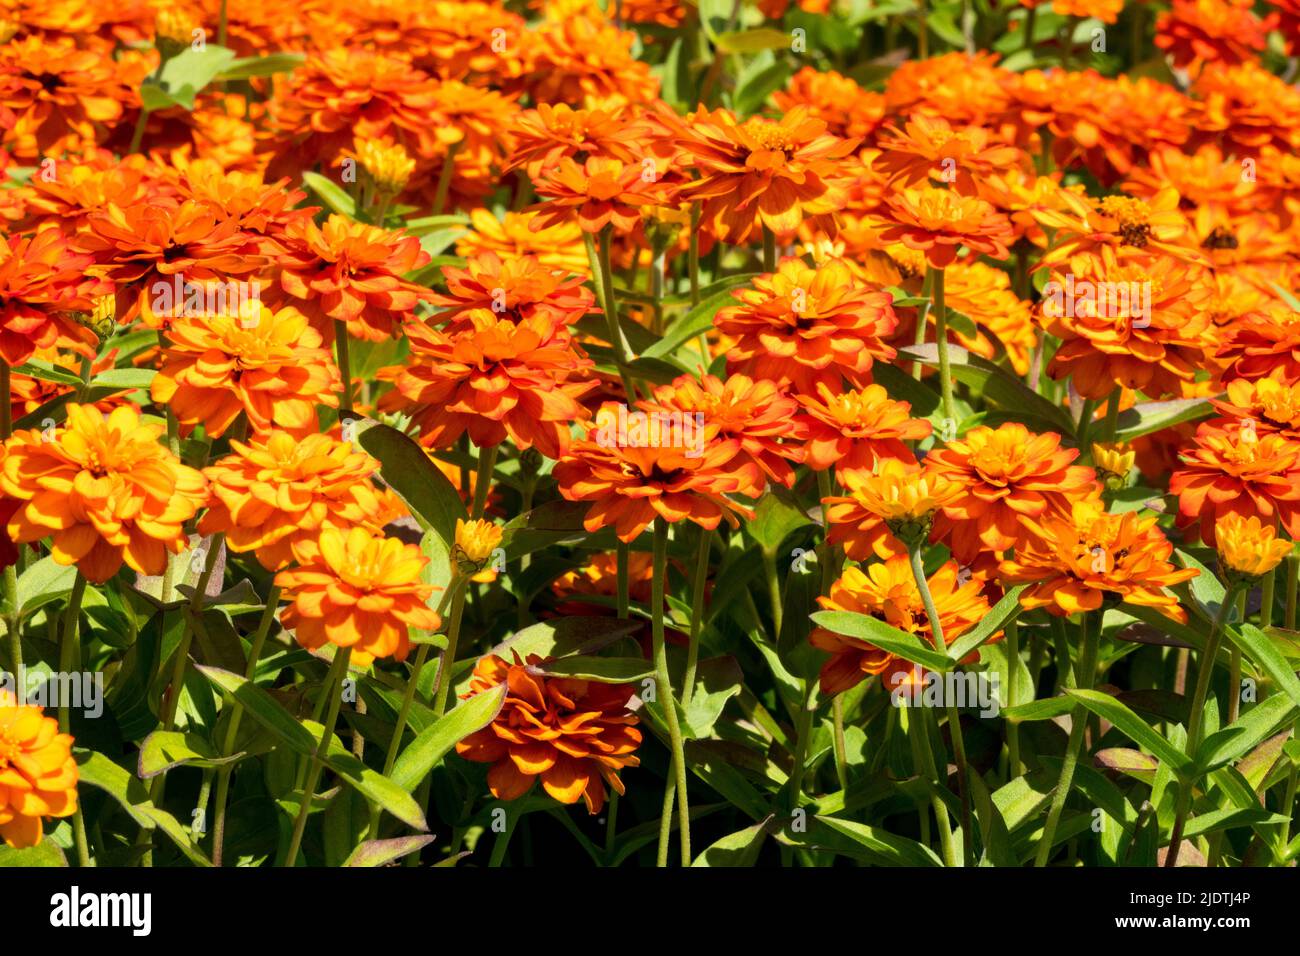 Planta Naranja, Zinnia Profusion Doble Fuego, Ropa de Cama, Plantas Anuales, Zinnias en un jardín cama de flores de verano Foto de stock